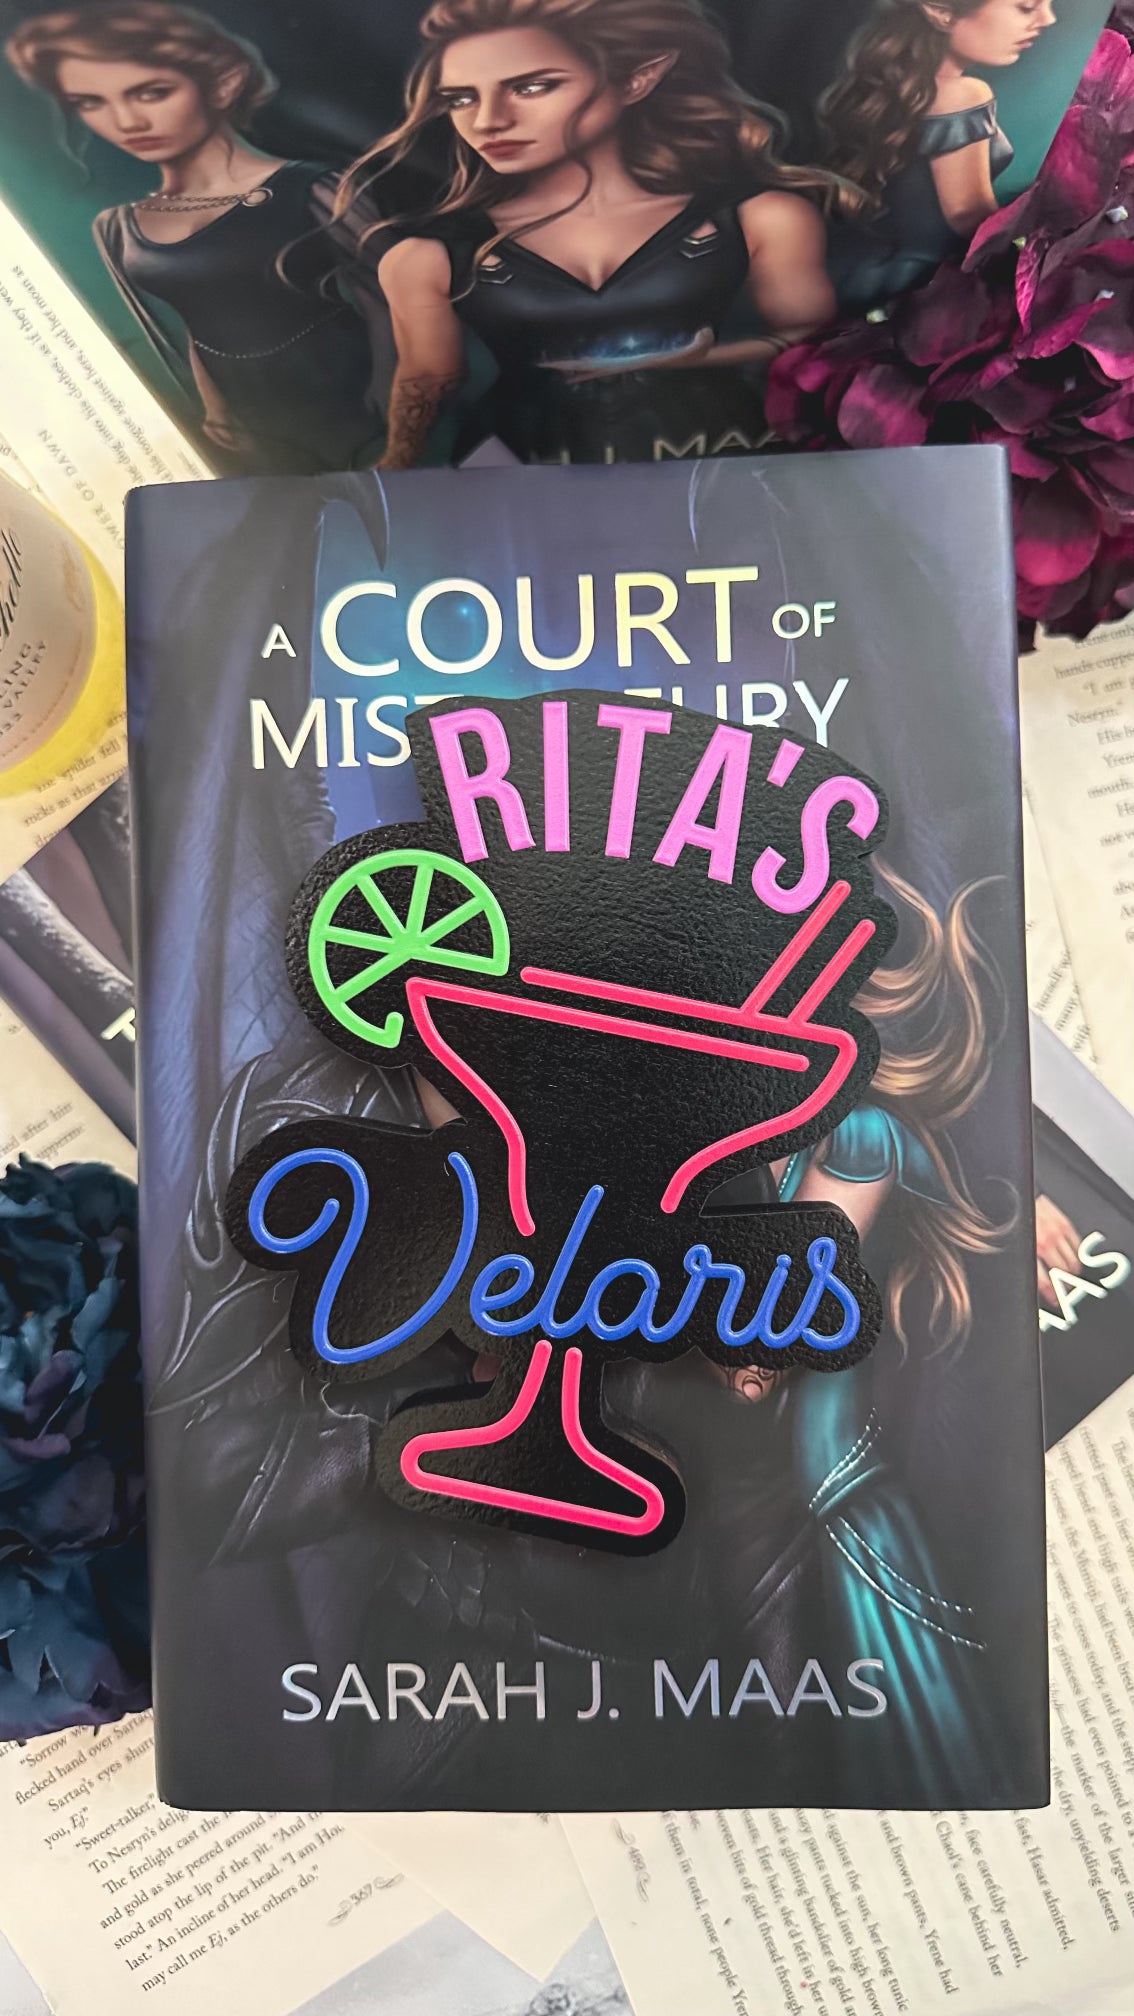 Rita's Night Club / Bar Sign - Velaris